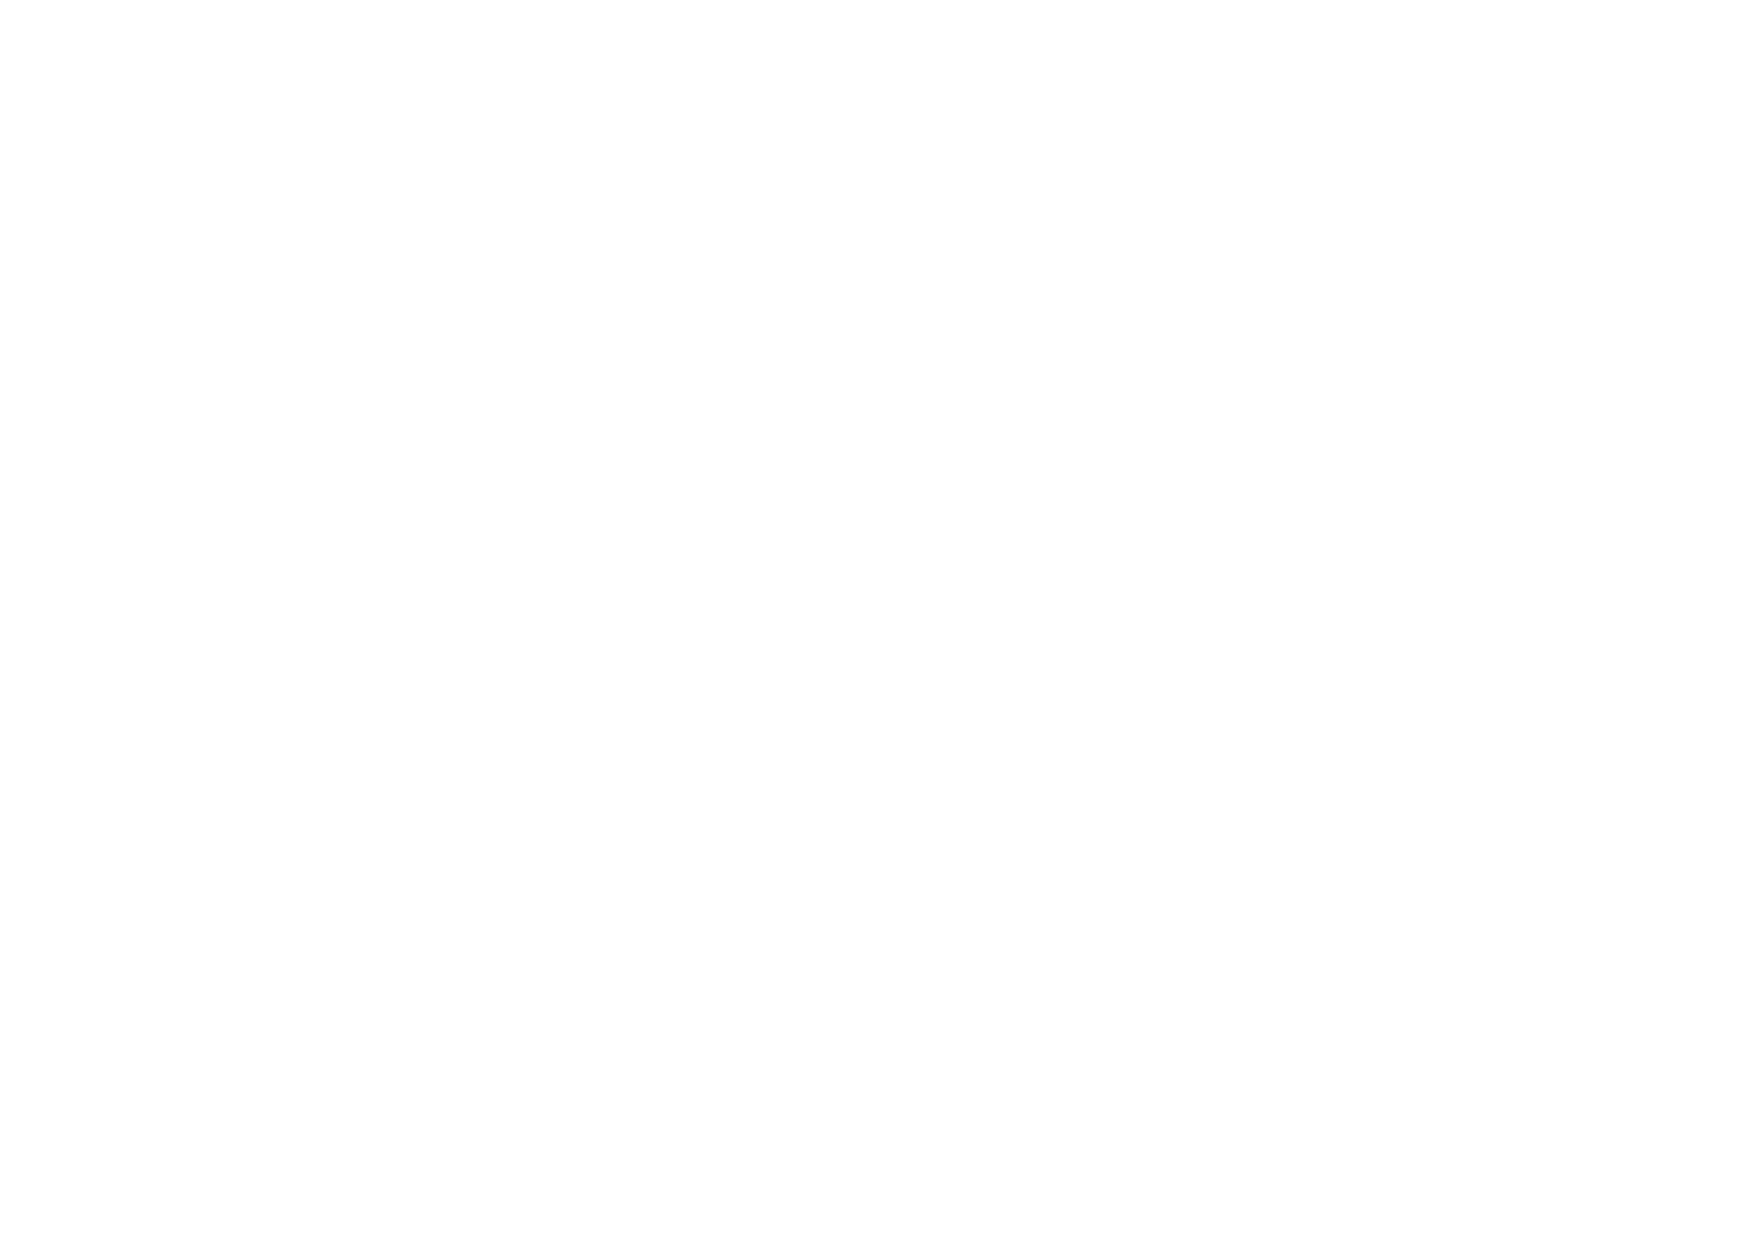 Logo del plato de ducha Stonebath de Securibath